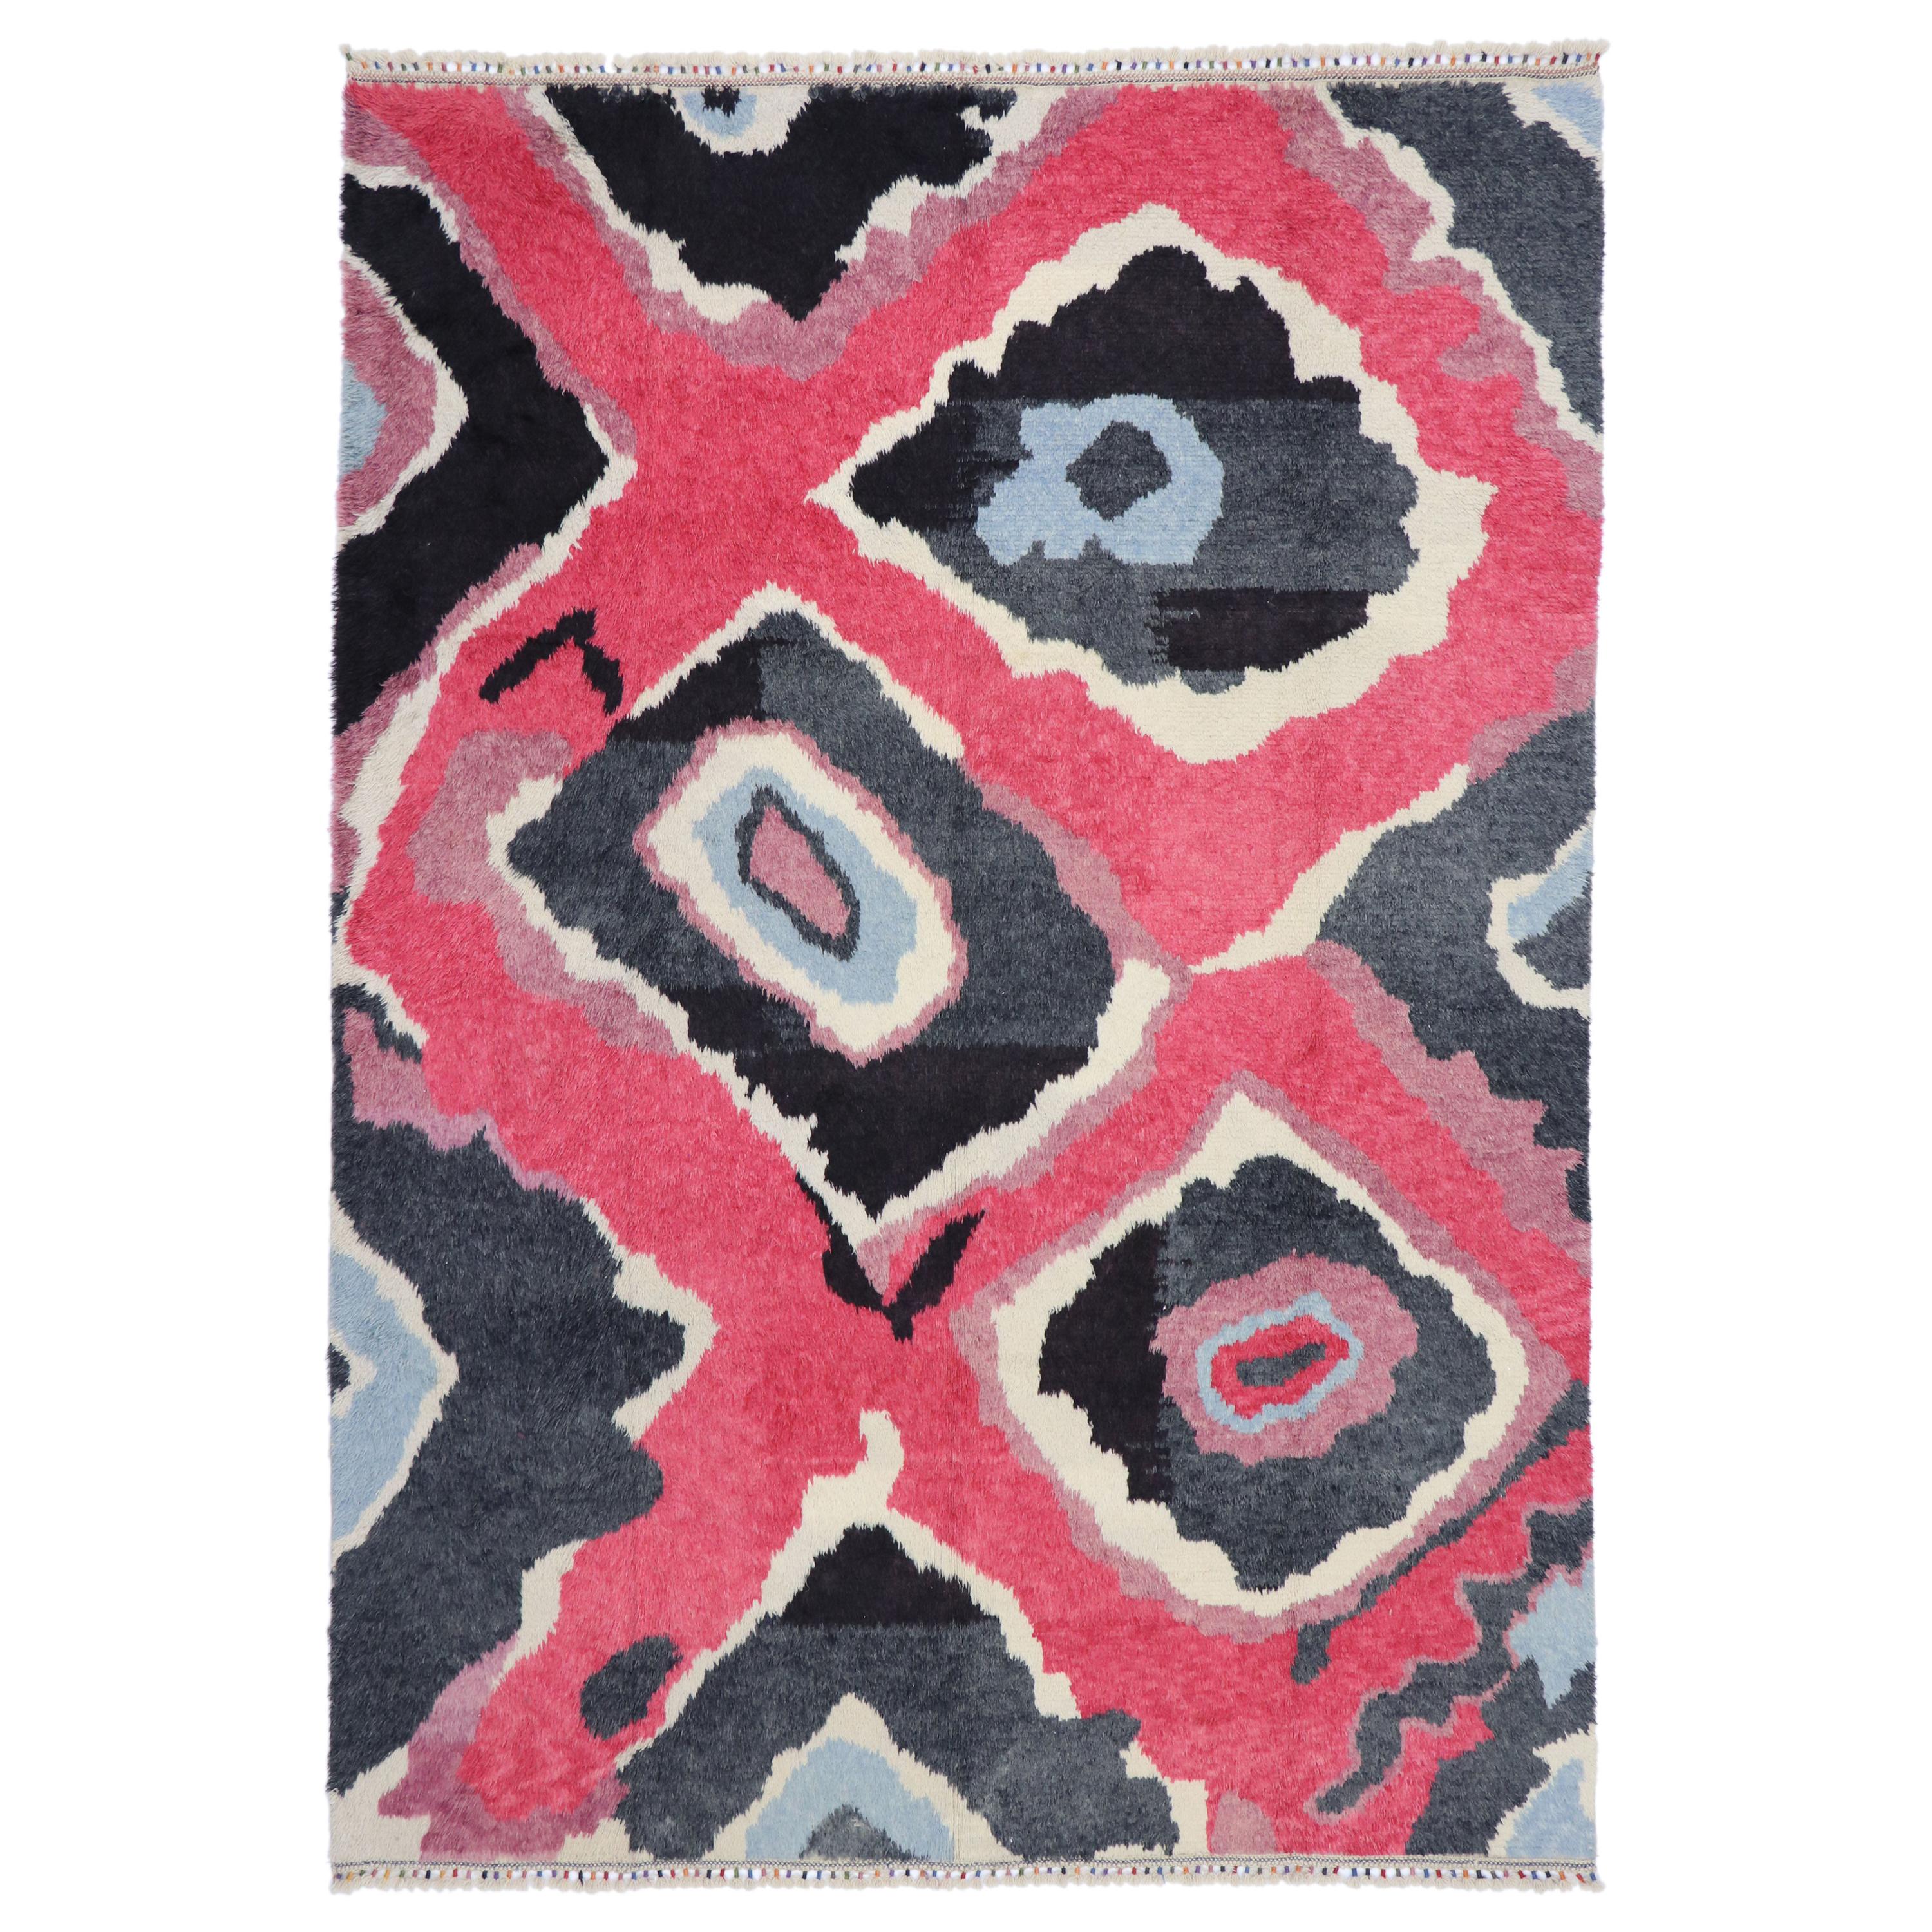 Nouveau tapis contemporain coloré à poils longs Tulu inspiré par Sonia Delaunay